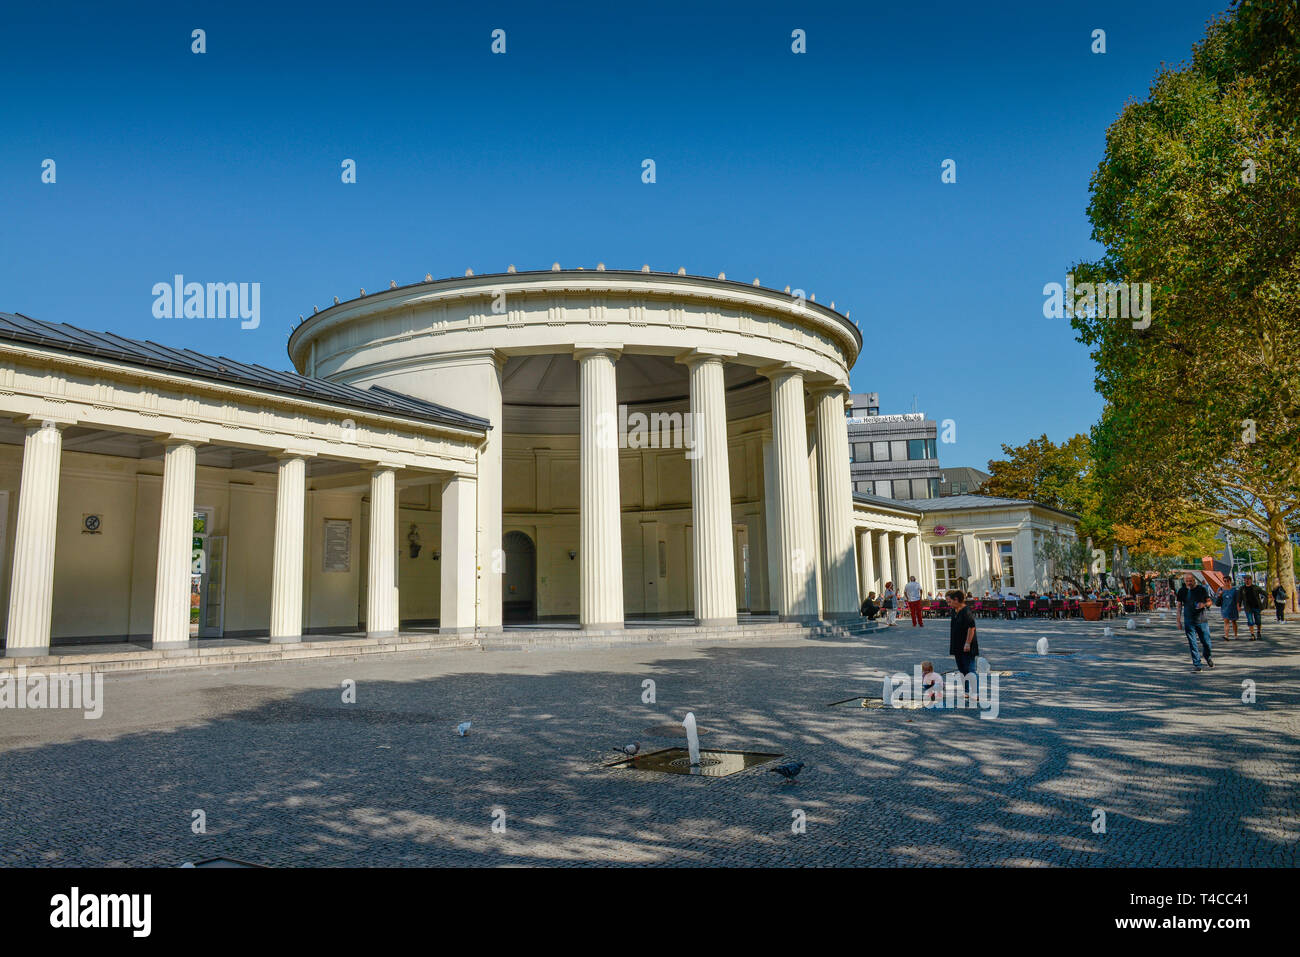 Elisenbrunnen, Friedrich-Wilhelm-Platz, Aachen, Nordrhein-Westfalen, Deutschland Stock Photo